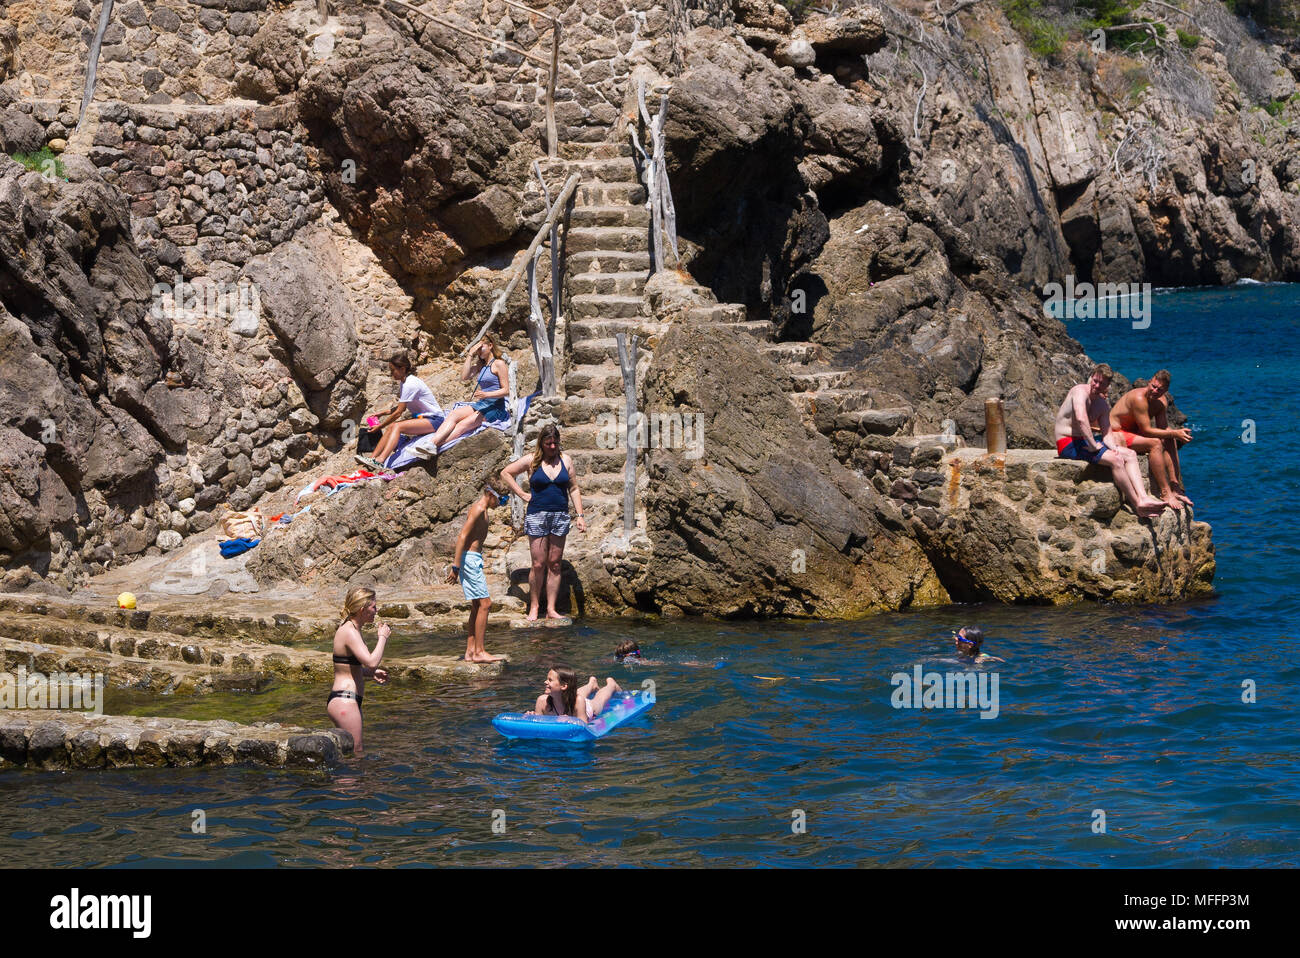 Jouissent d'une chaude journée ensoleillée au bord de l'eau à Cala Deia, Mallorca, Espagne. Banque D'Images